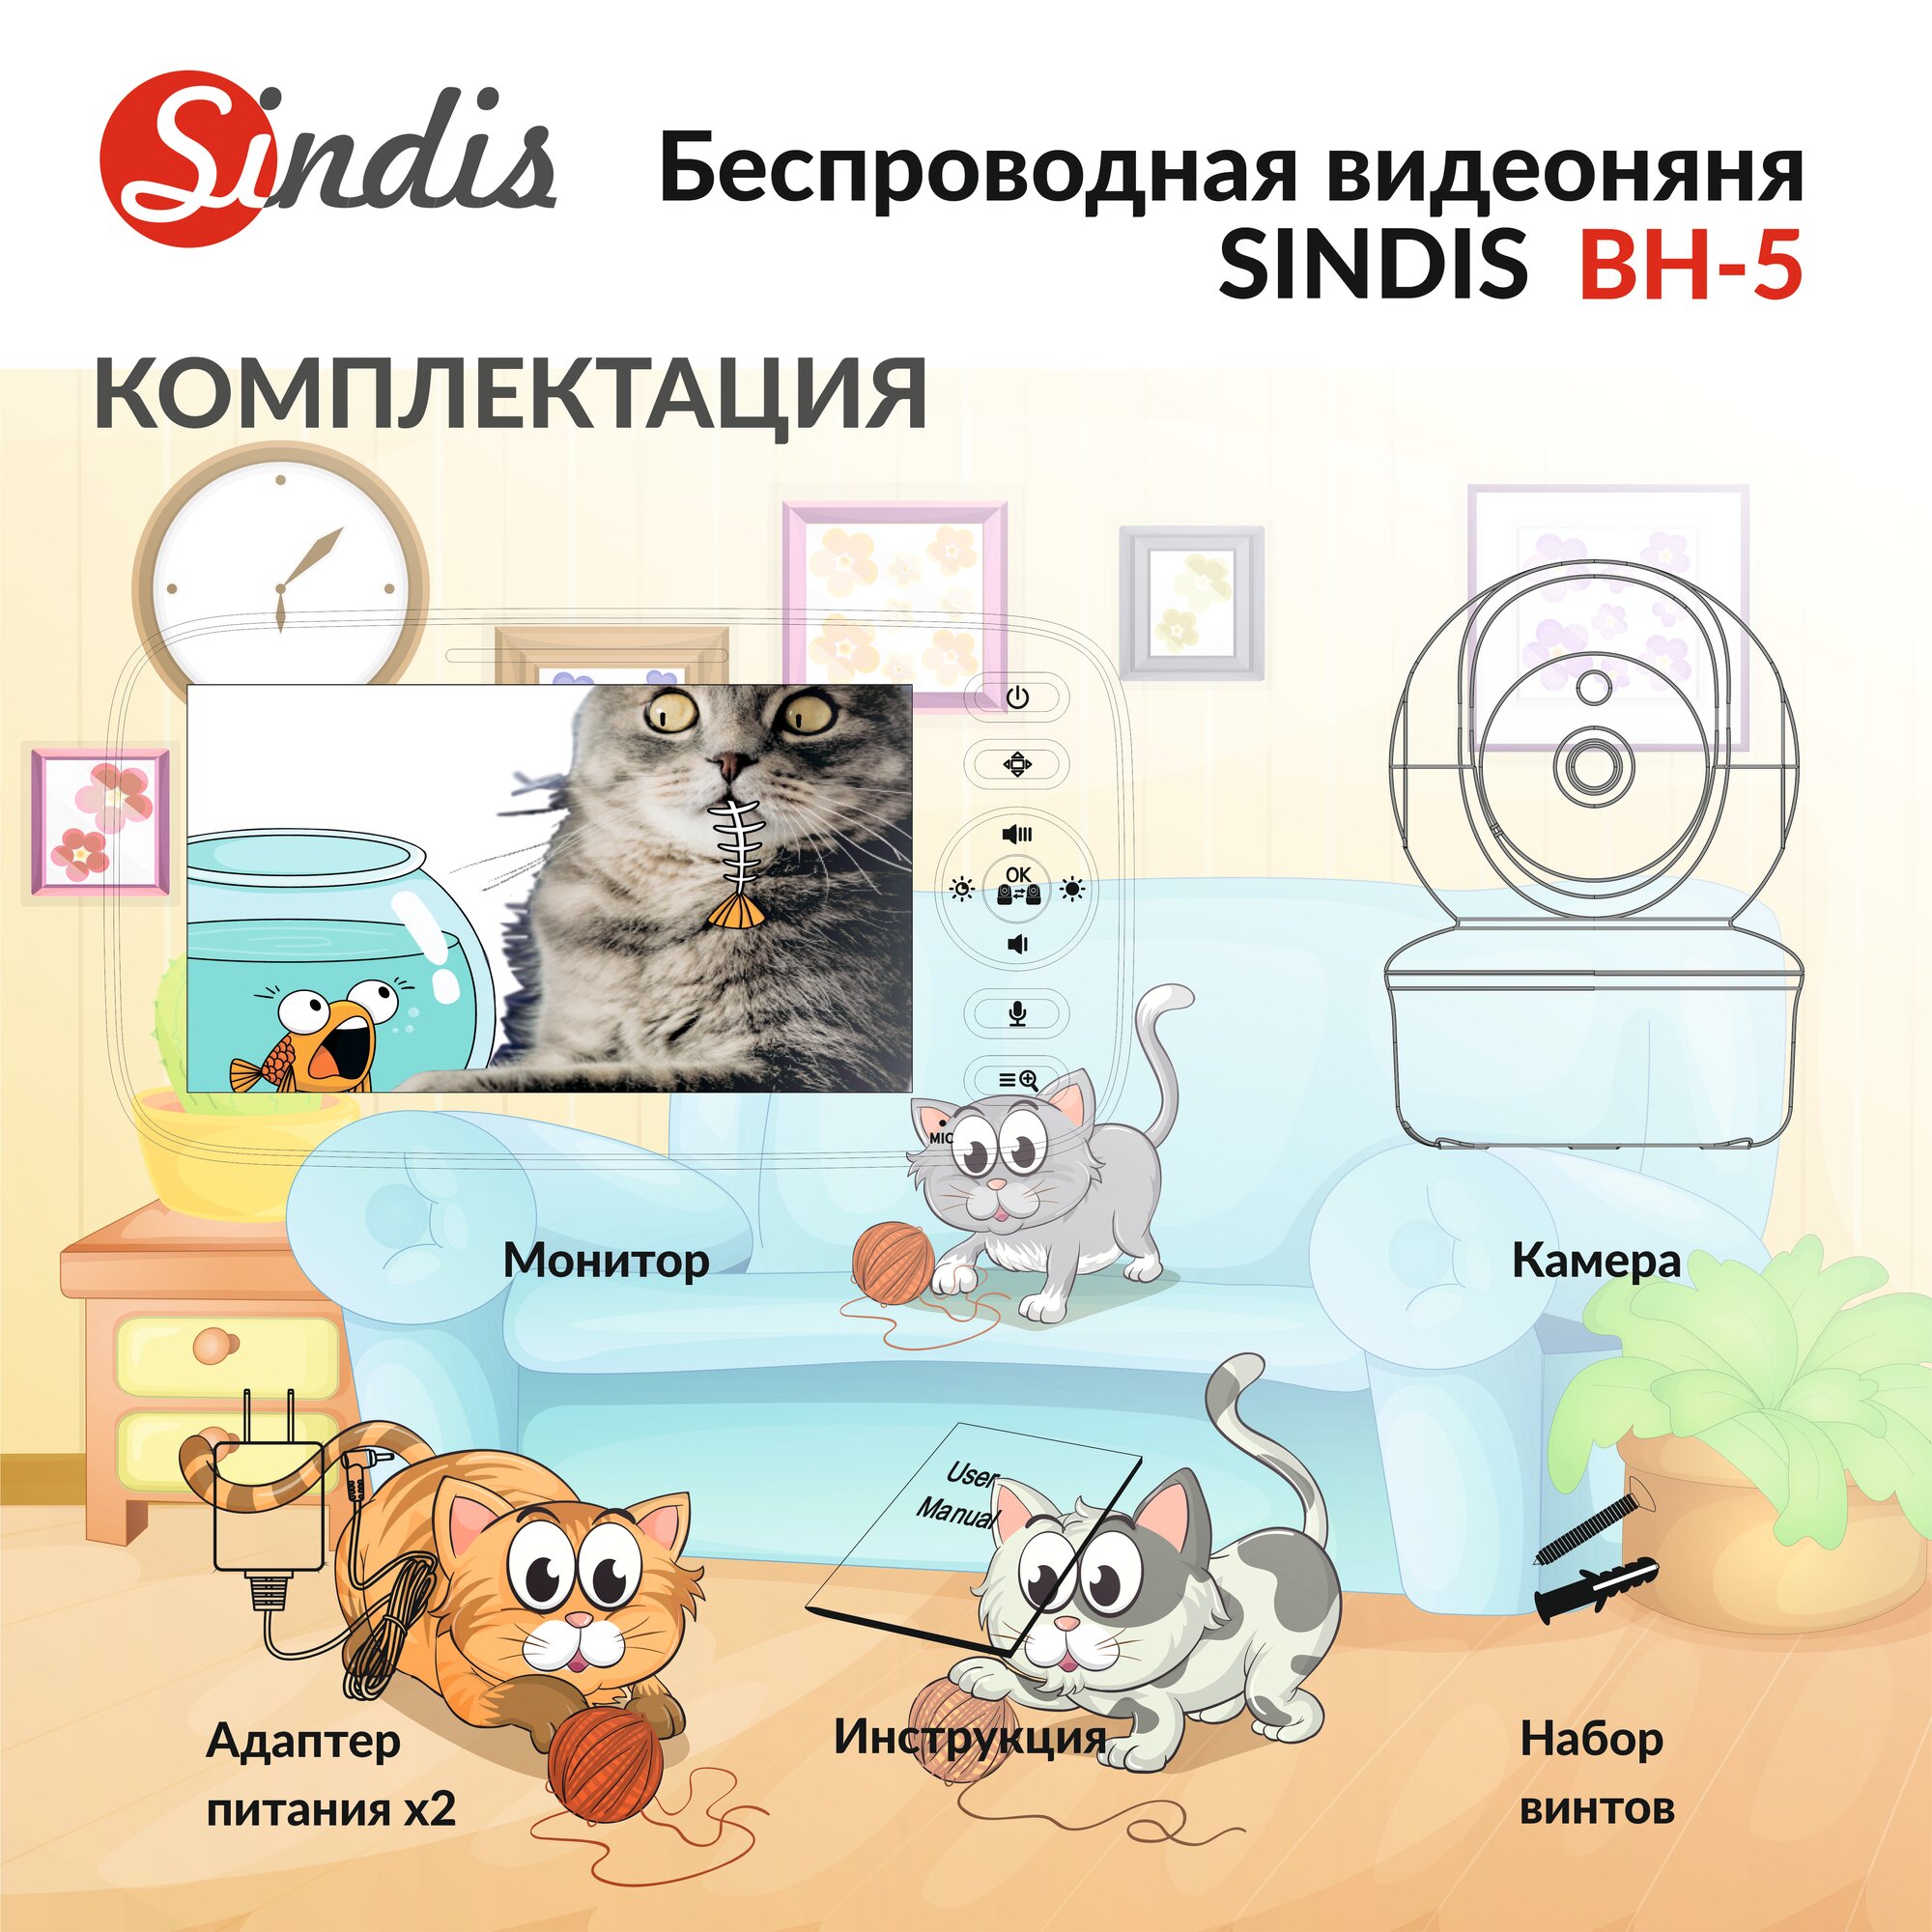 Видеоняня Sindis BH-5